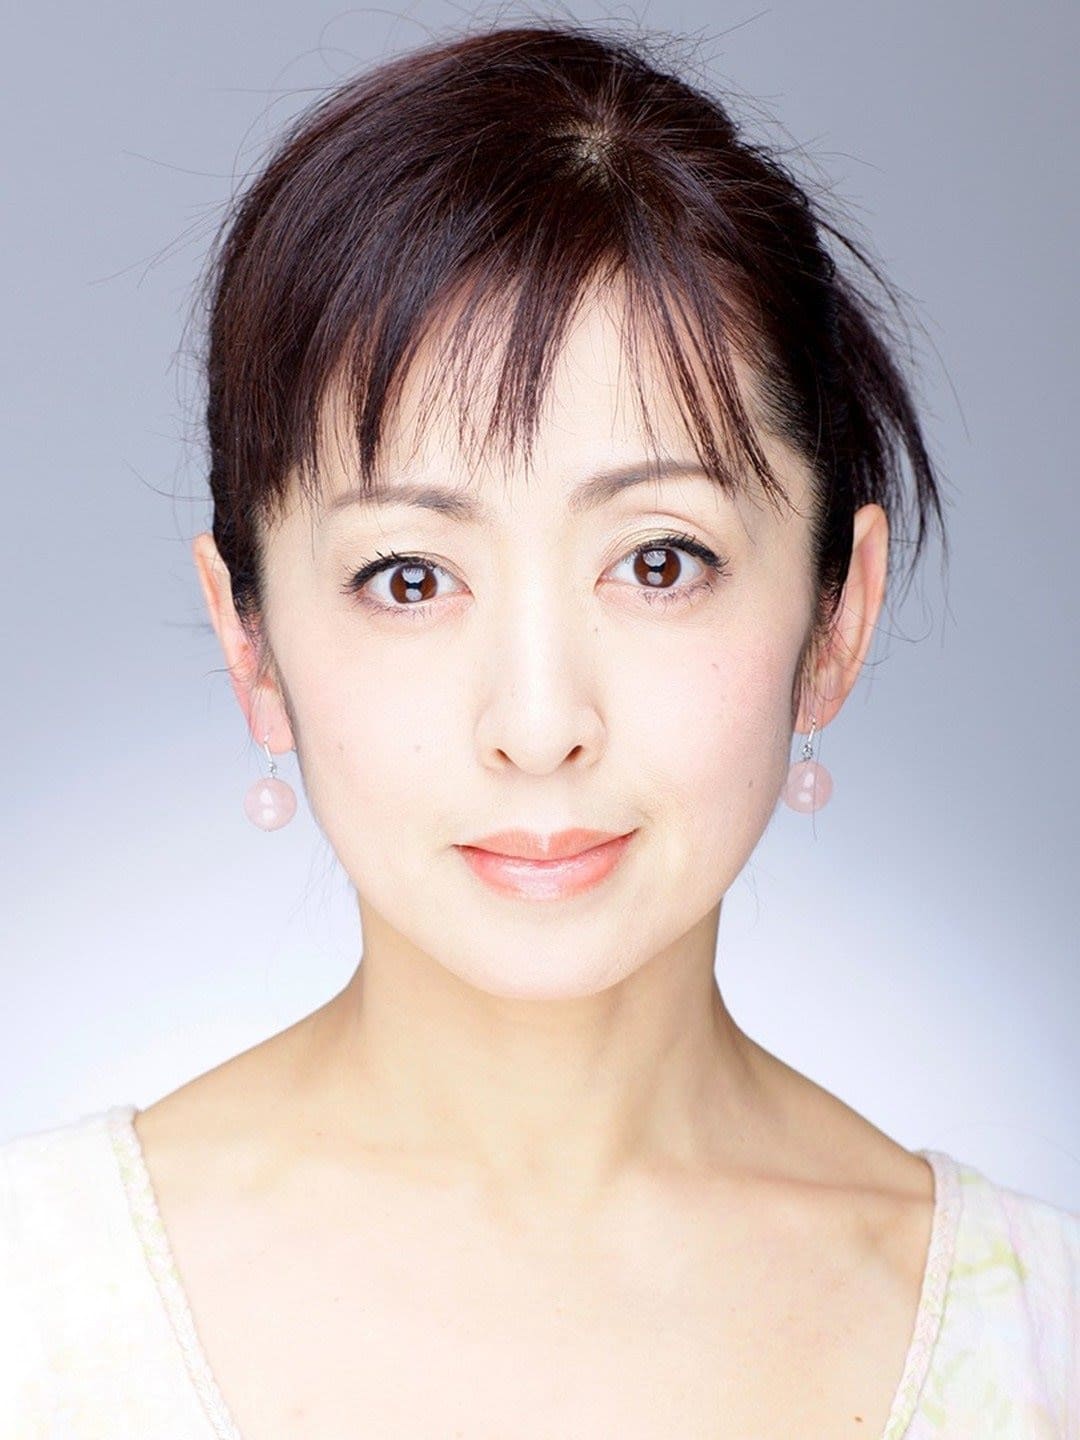 Yuki Saito